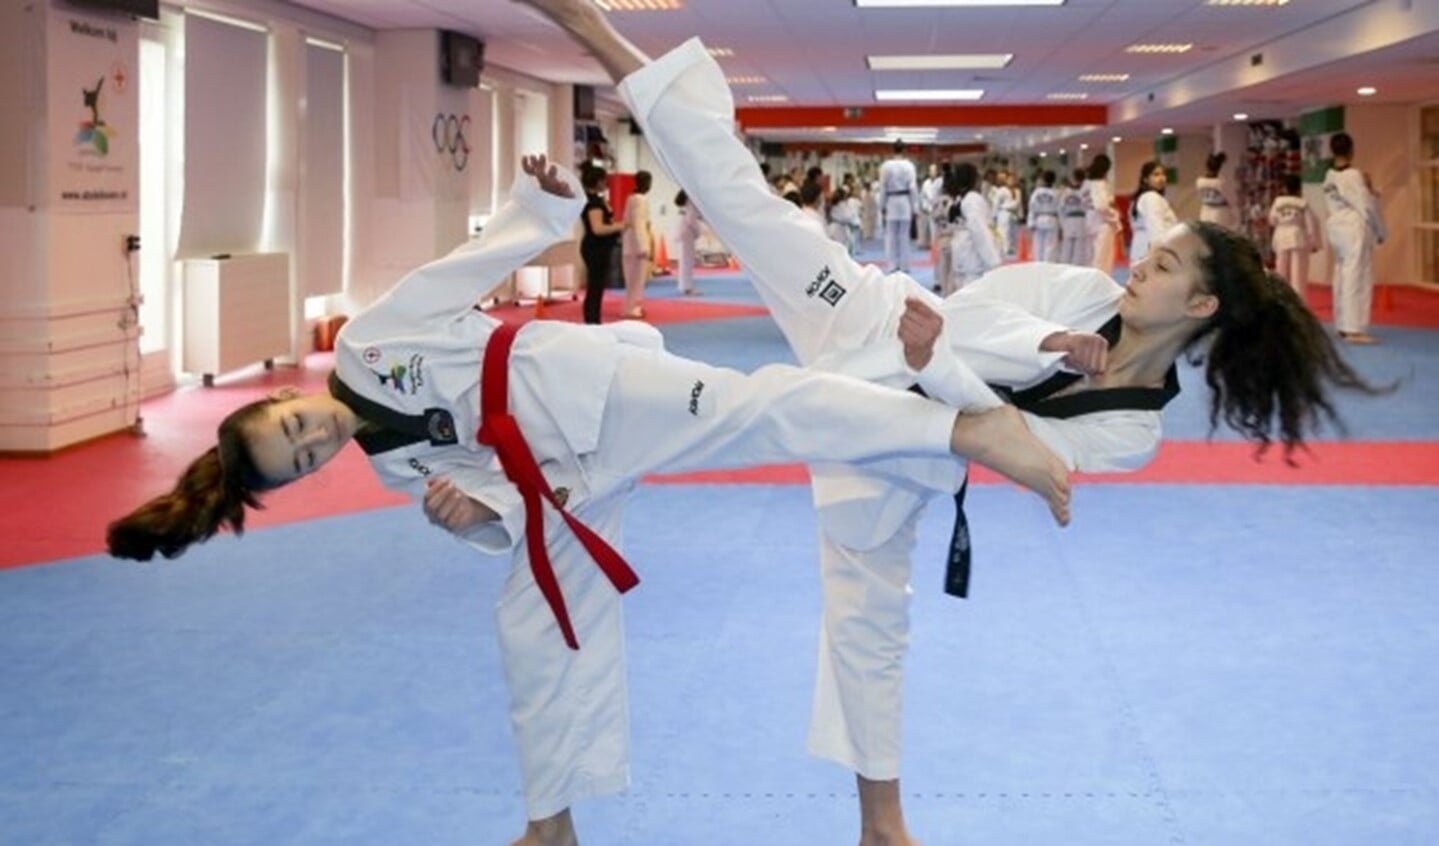 Aya Bouhmida en Hiba Maghnouj zijn allebei Europees kampioen taekwondo in hun leeftijdsklasse en dromen al van de Olympische Spelen. 